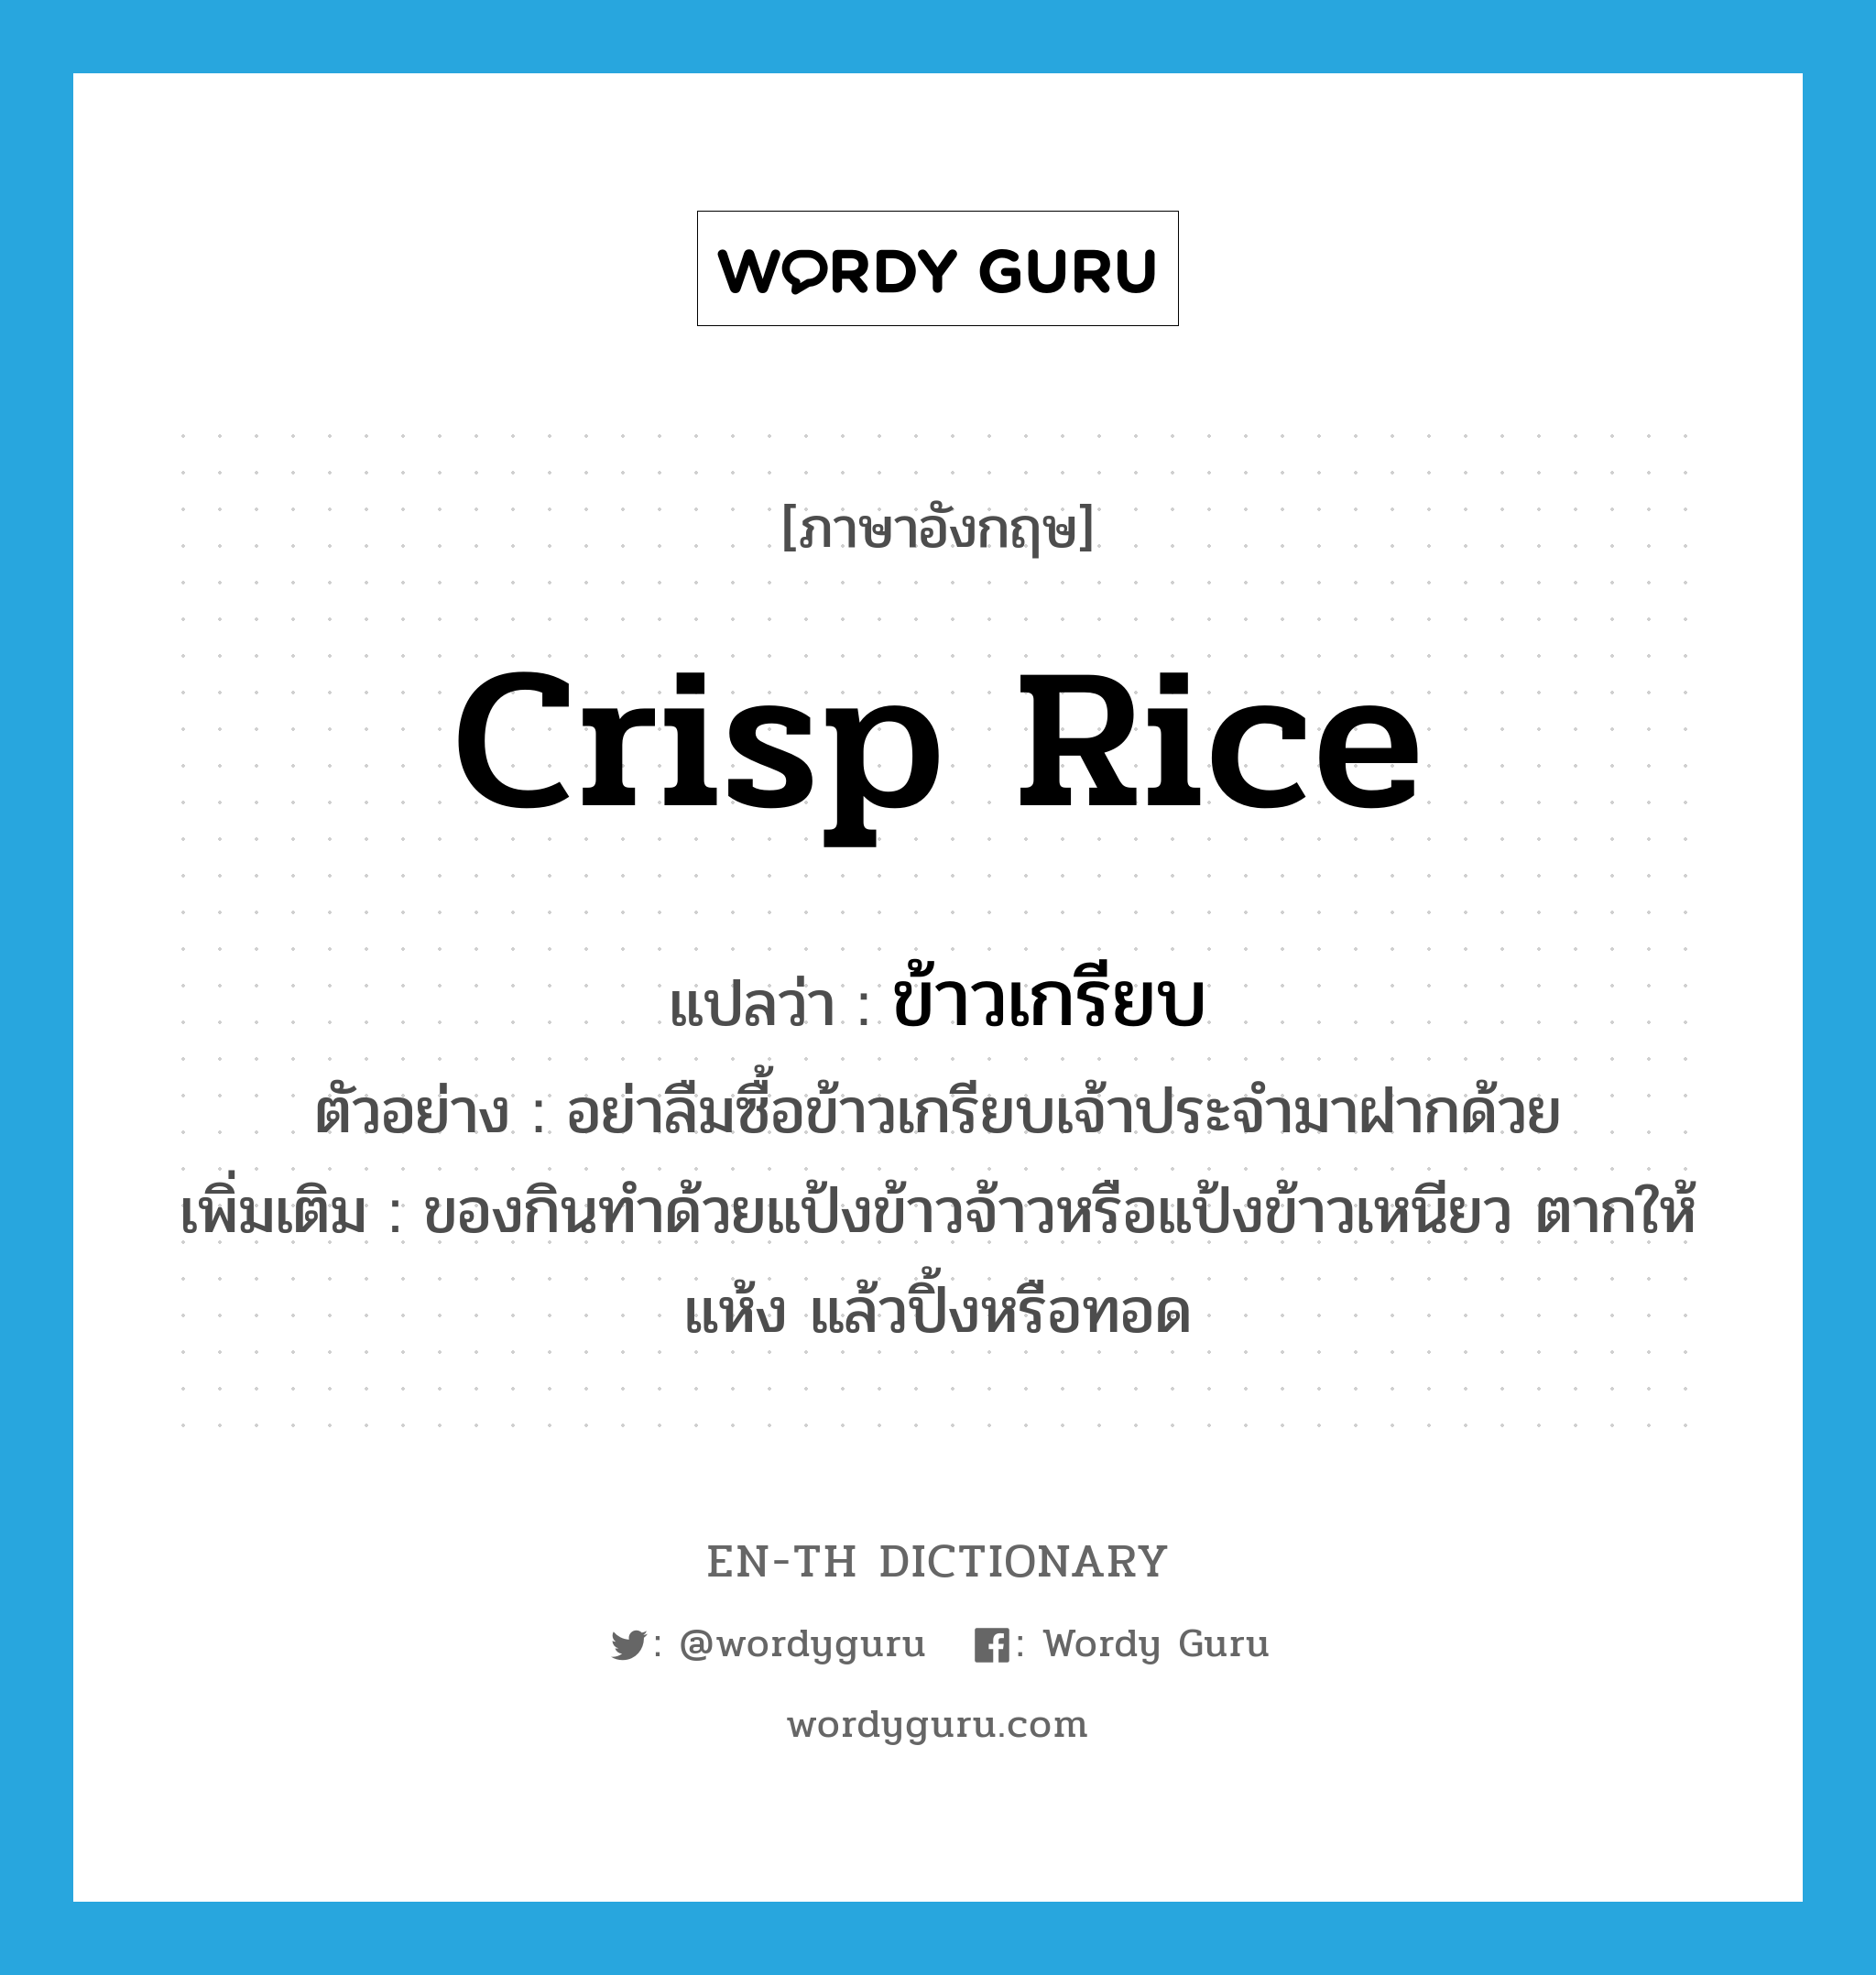 crisp rice แปลว่า?, คำศัพท์ภาษาอังกฤษ crisp rice แปลว่า ข้าวเกรียบ ประเภท N ตัวอย่าง อย่าลืมซื้อข้าวเกรียบเจ้าประจำมาฝากด้วย เพิ่มเติม ของกินทำด้วยแป้งข้าวจ้าวหรือแป้งข้าวเหนียว ตากให้แห้ง แล้วปิ้งหรือทอด หมวด N